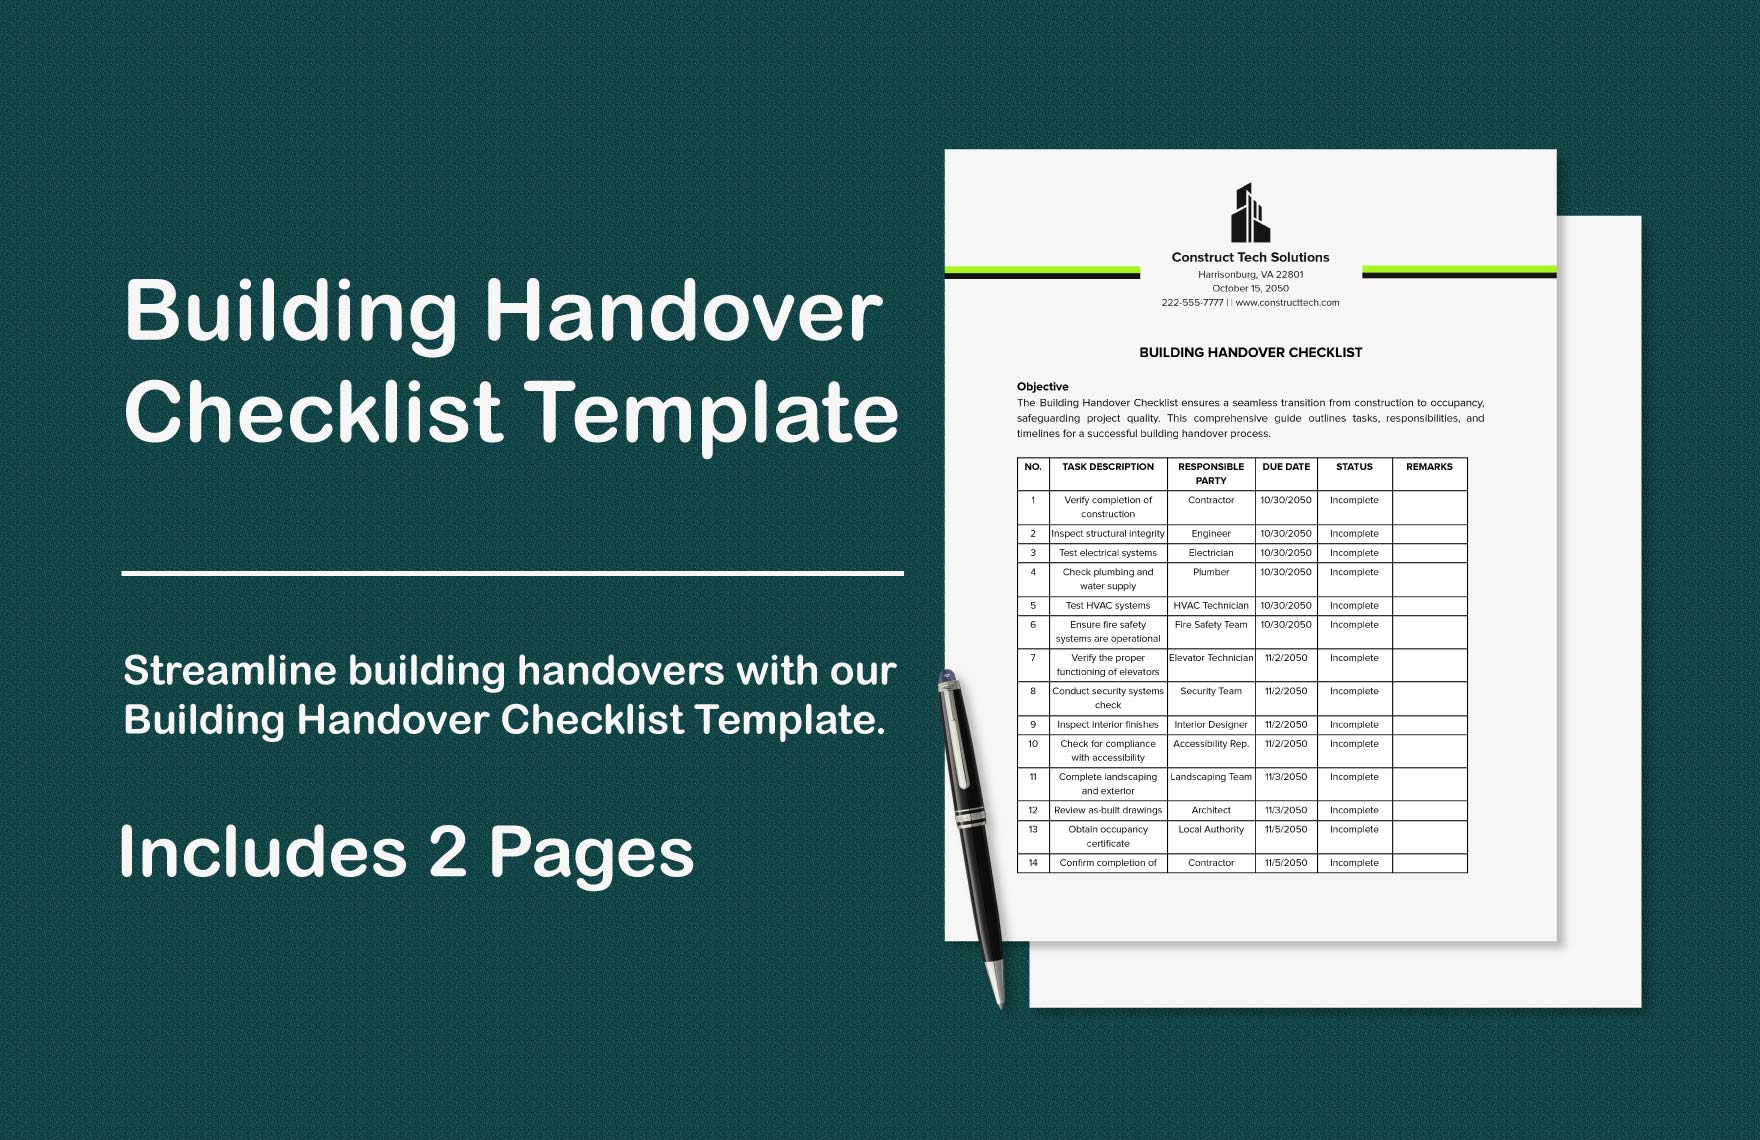 Building Handover Checklist Template